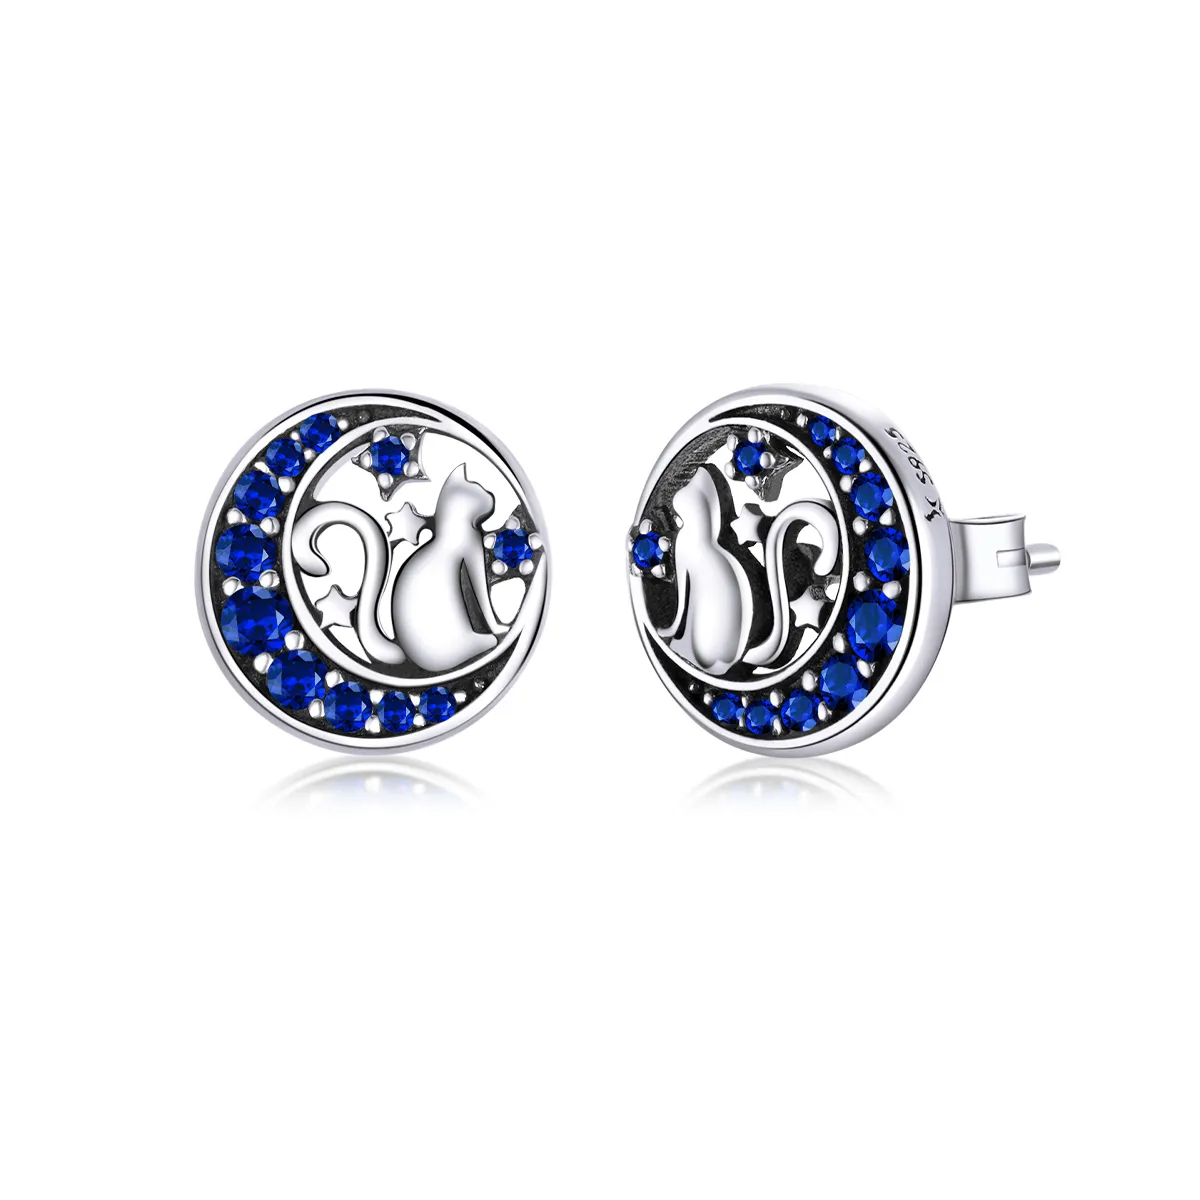 Pandora Style Silver Blue Moon & Kitty Stud Earrings - SCE880